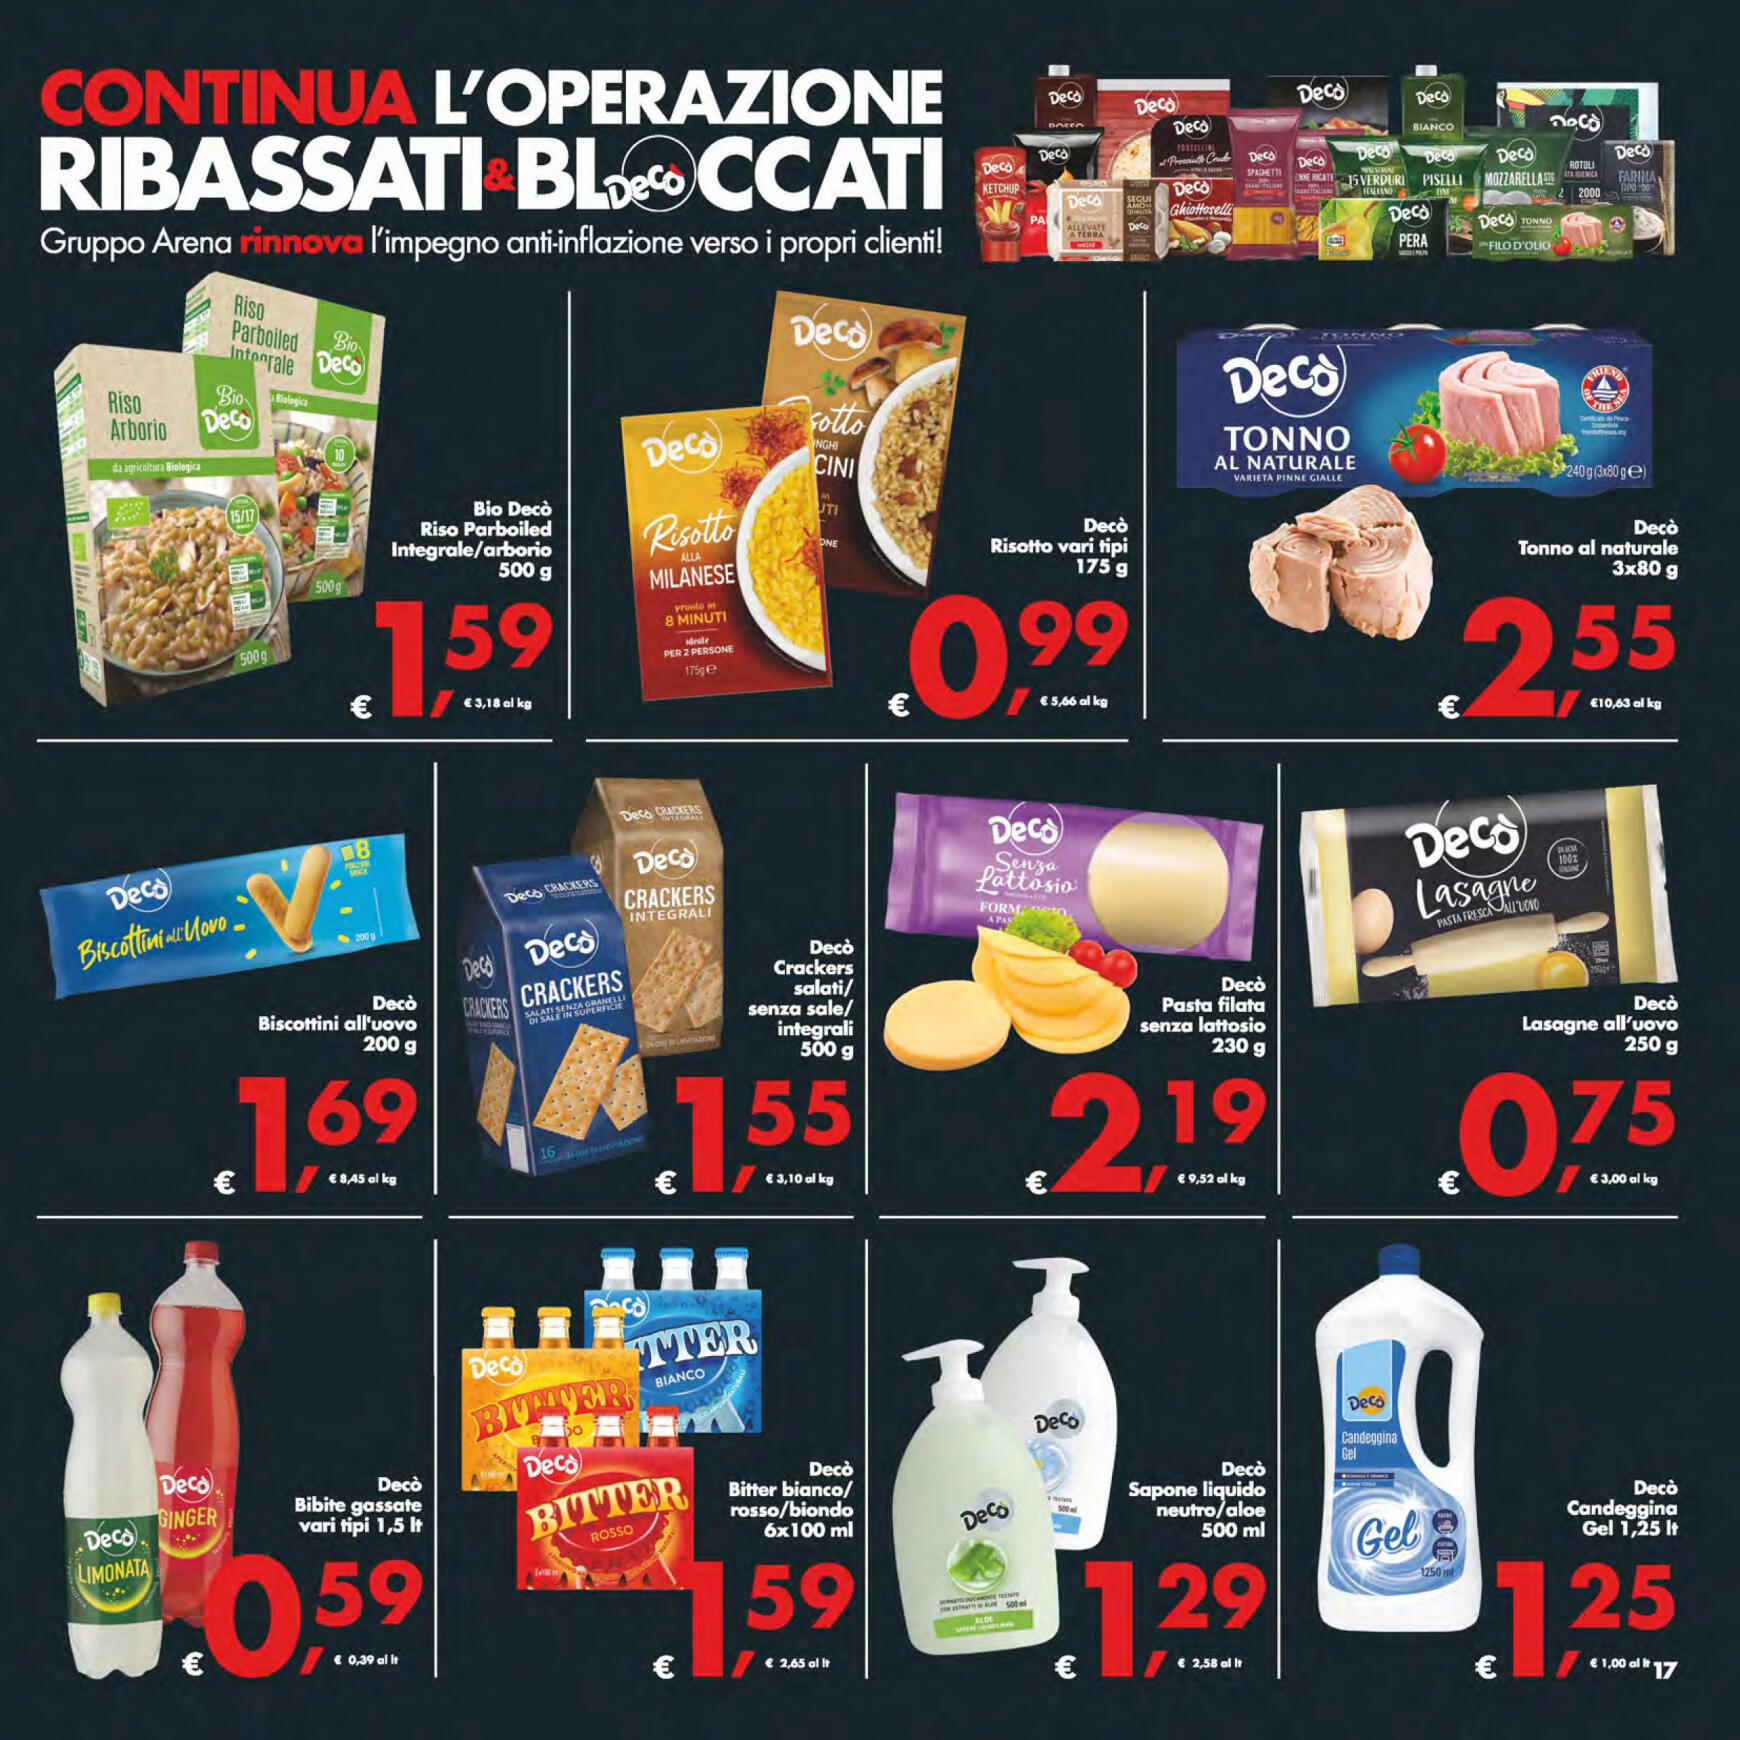 deco - Nuovo volantino Decò - Maxistore/Supermercati/Local 14.05. - 23.05. - page: 17